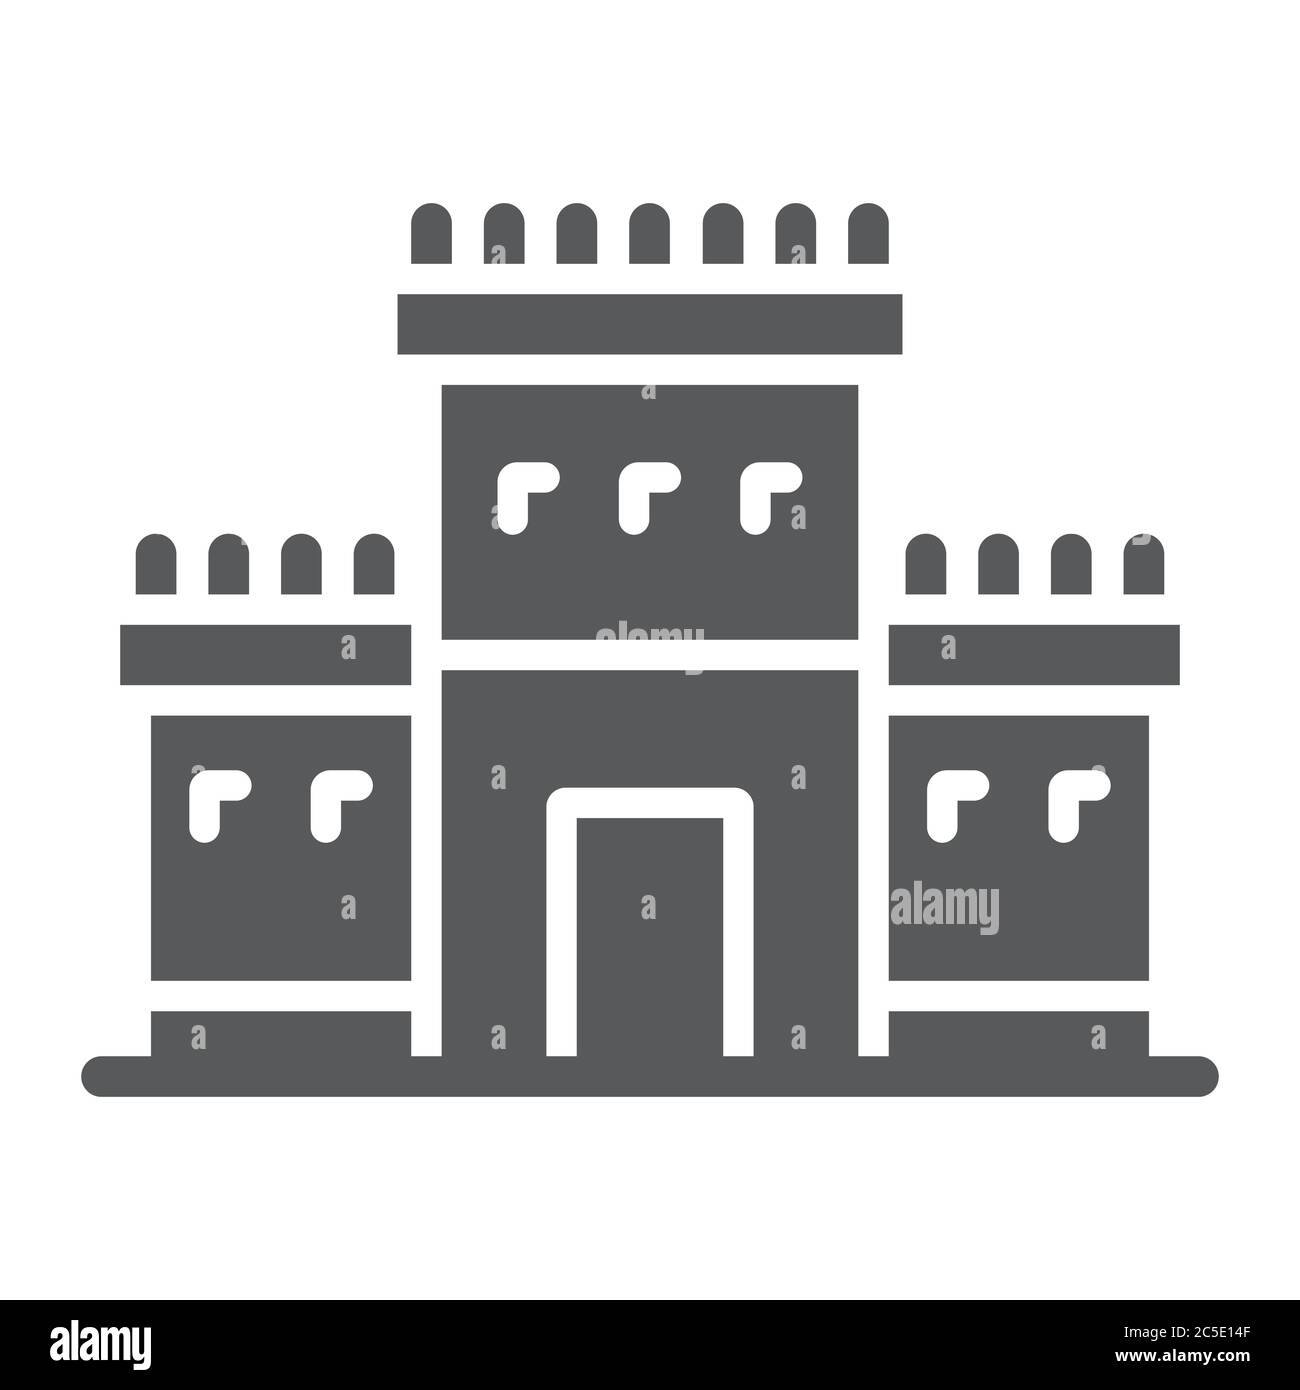 Tempio di Salomone in gerusalemme icona glifo, religione ed ebraico, segno di tabernacolo ebraico, grafica vettoriale, un motivo solido su sfondo bianco. Illustrazione Vettoriale